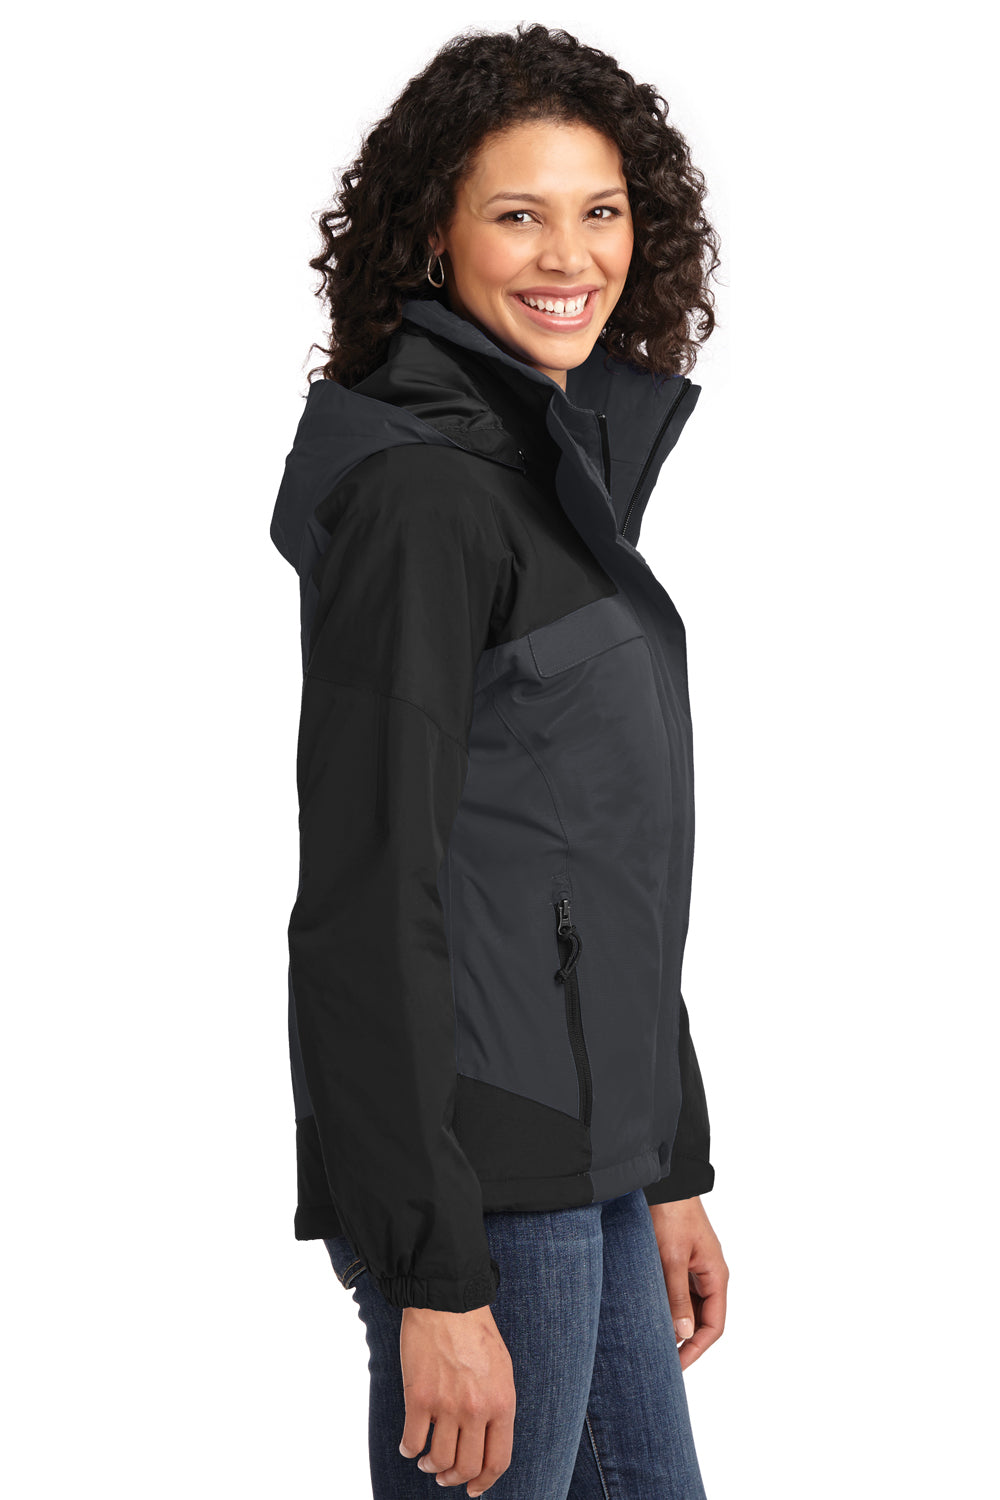 Port Authority L792 Womens Nootka Waterproof Full Zip Hooded Jacket Graphite Grey/Black Side